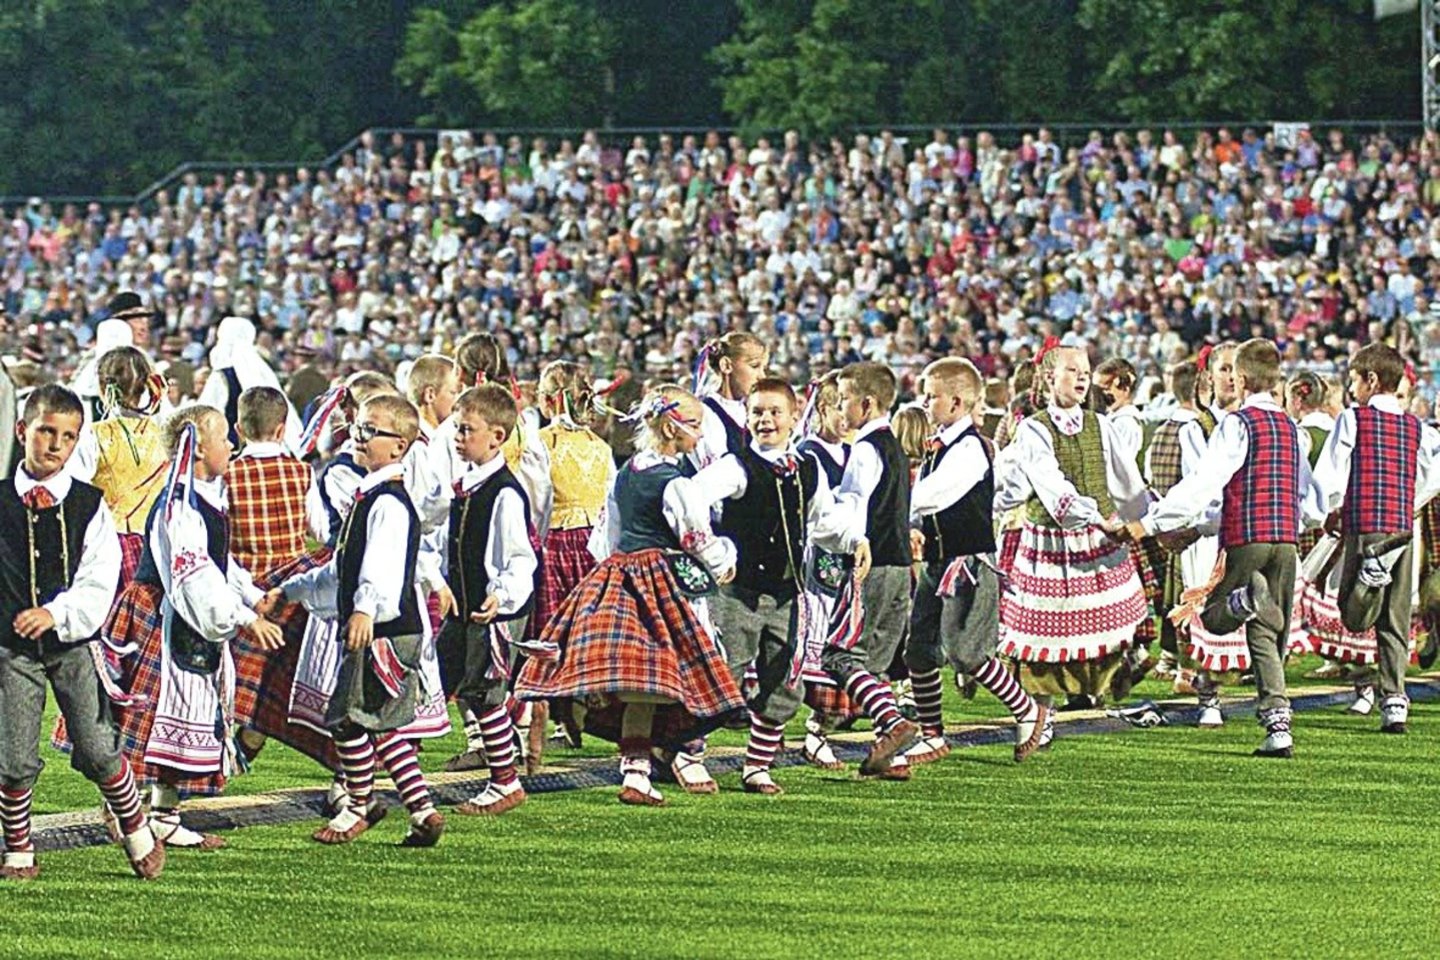 20-osios Dainų šventės „Vardan tos...“ programose dalyvaus 36 tūkst. liaudies meno puoselėtojų iš Lietuvos miestų, kaimų ir miestelių, tarp jų – 16 tūkst. vaikų, užsienio lietuviai iš 15 pasaulio šalių, 13 Lietuvos tautinių bendrijų kolektyvų.